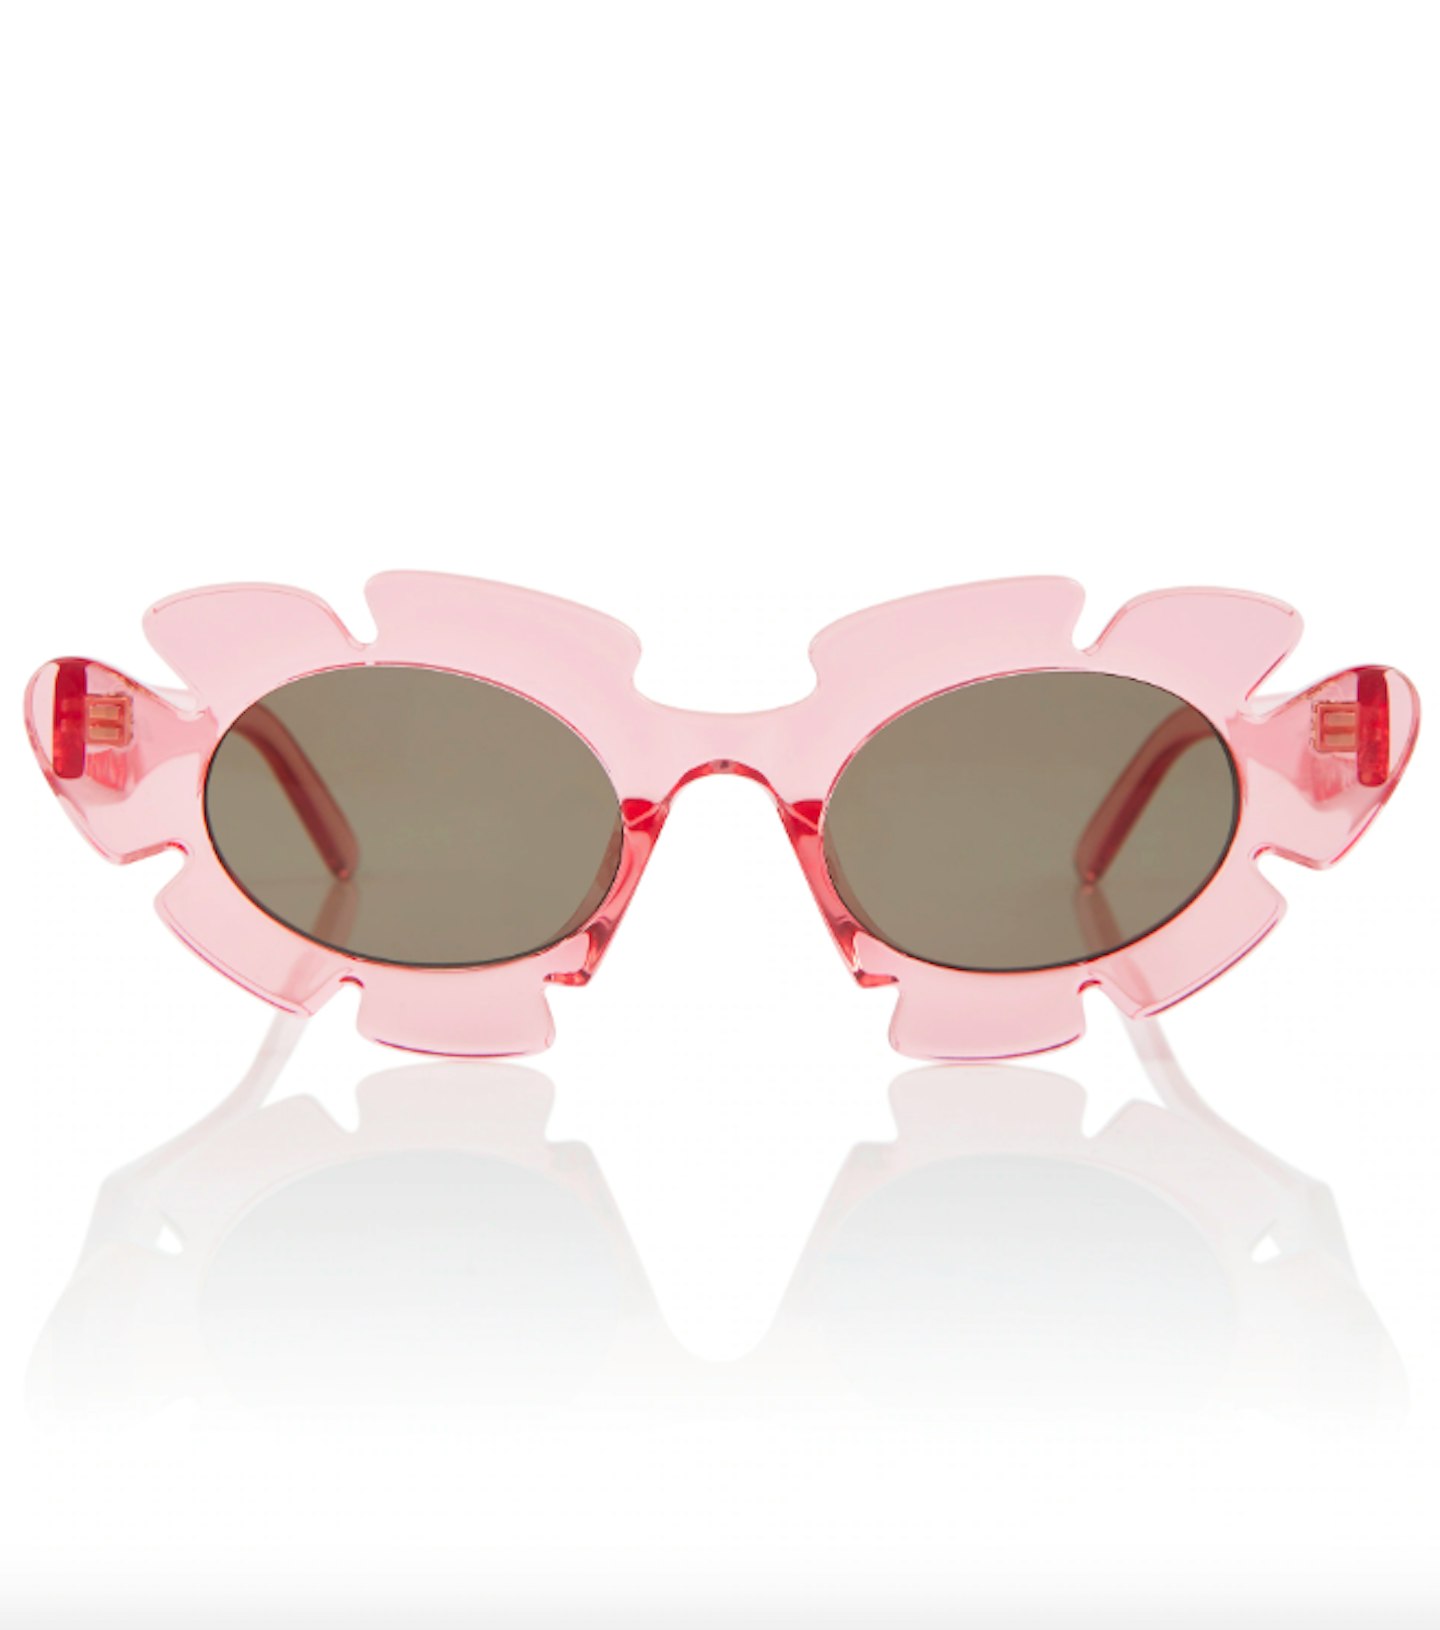 Loewe, Paula's Ibiza Cat-Eye Sunglasses